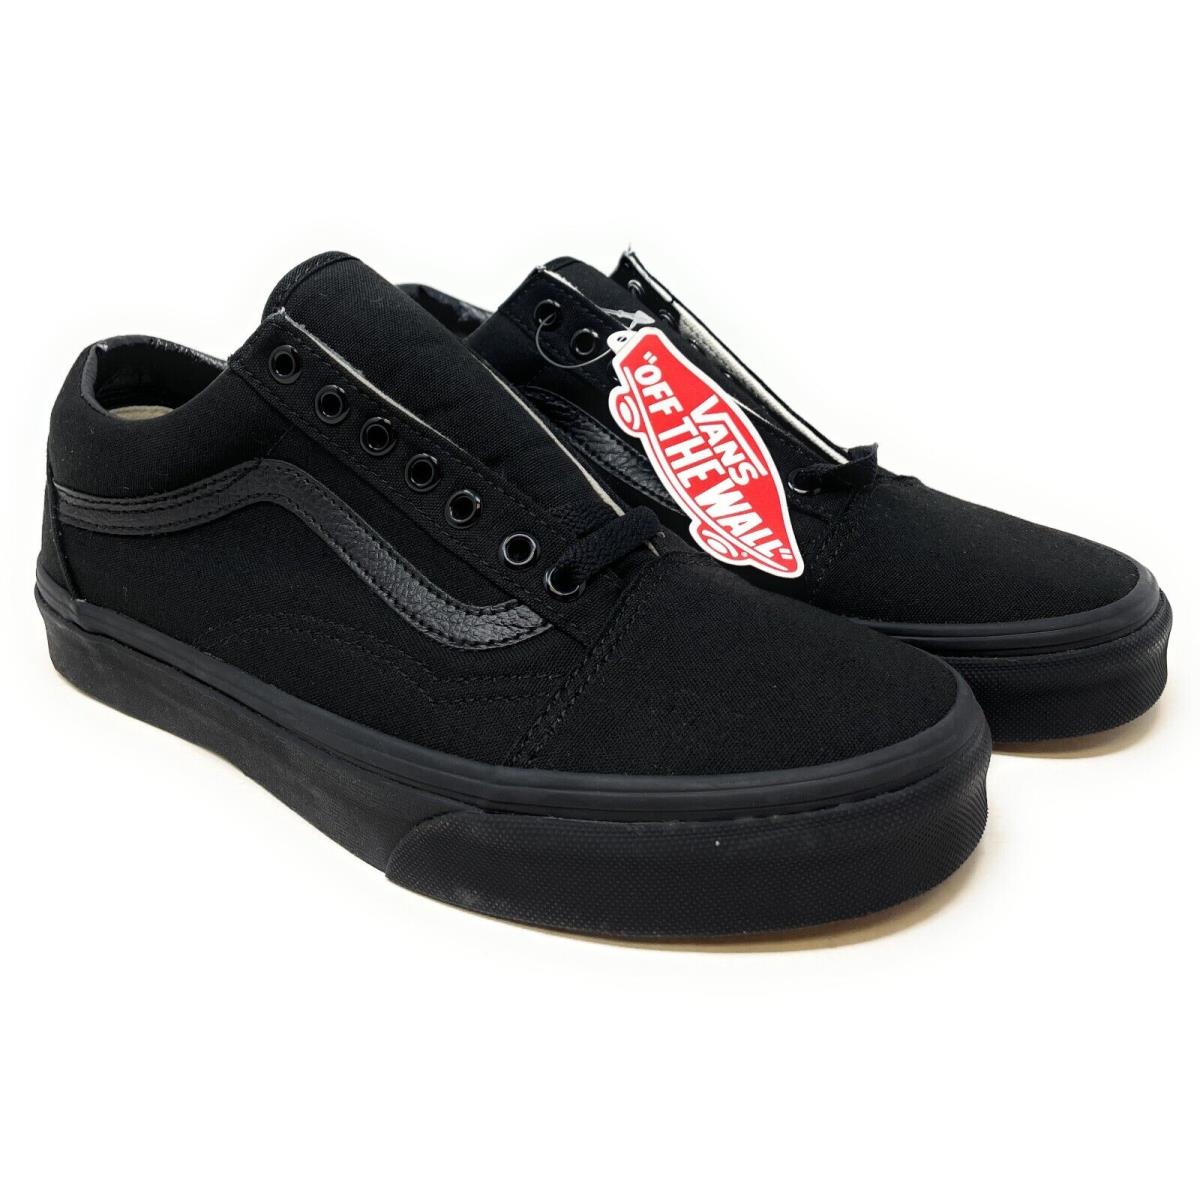 Vans Old Skool Skateboarding Shoes Black/black For Men/women - Black